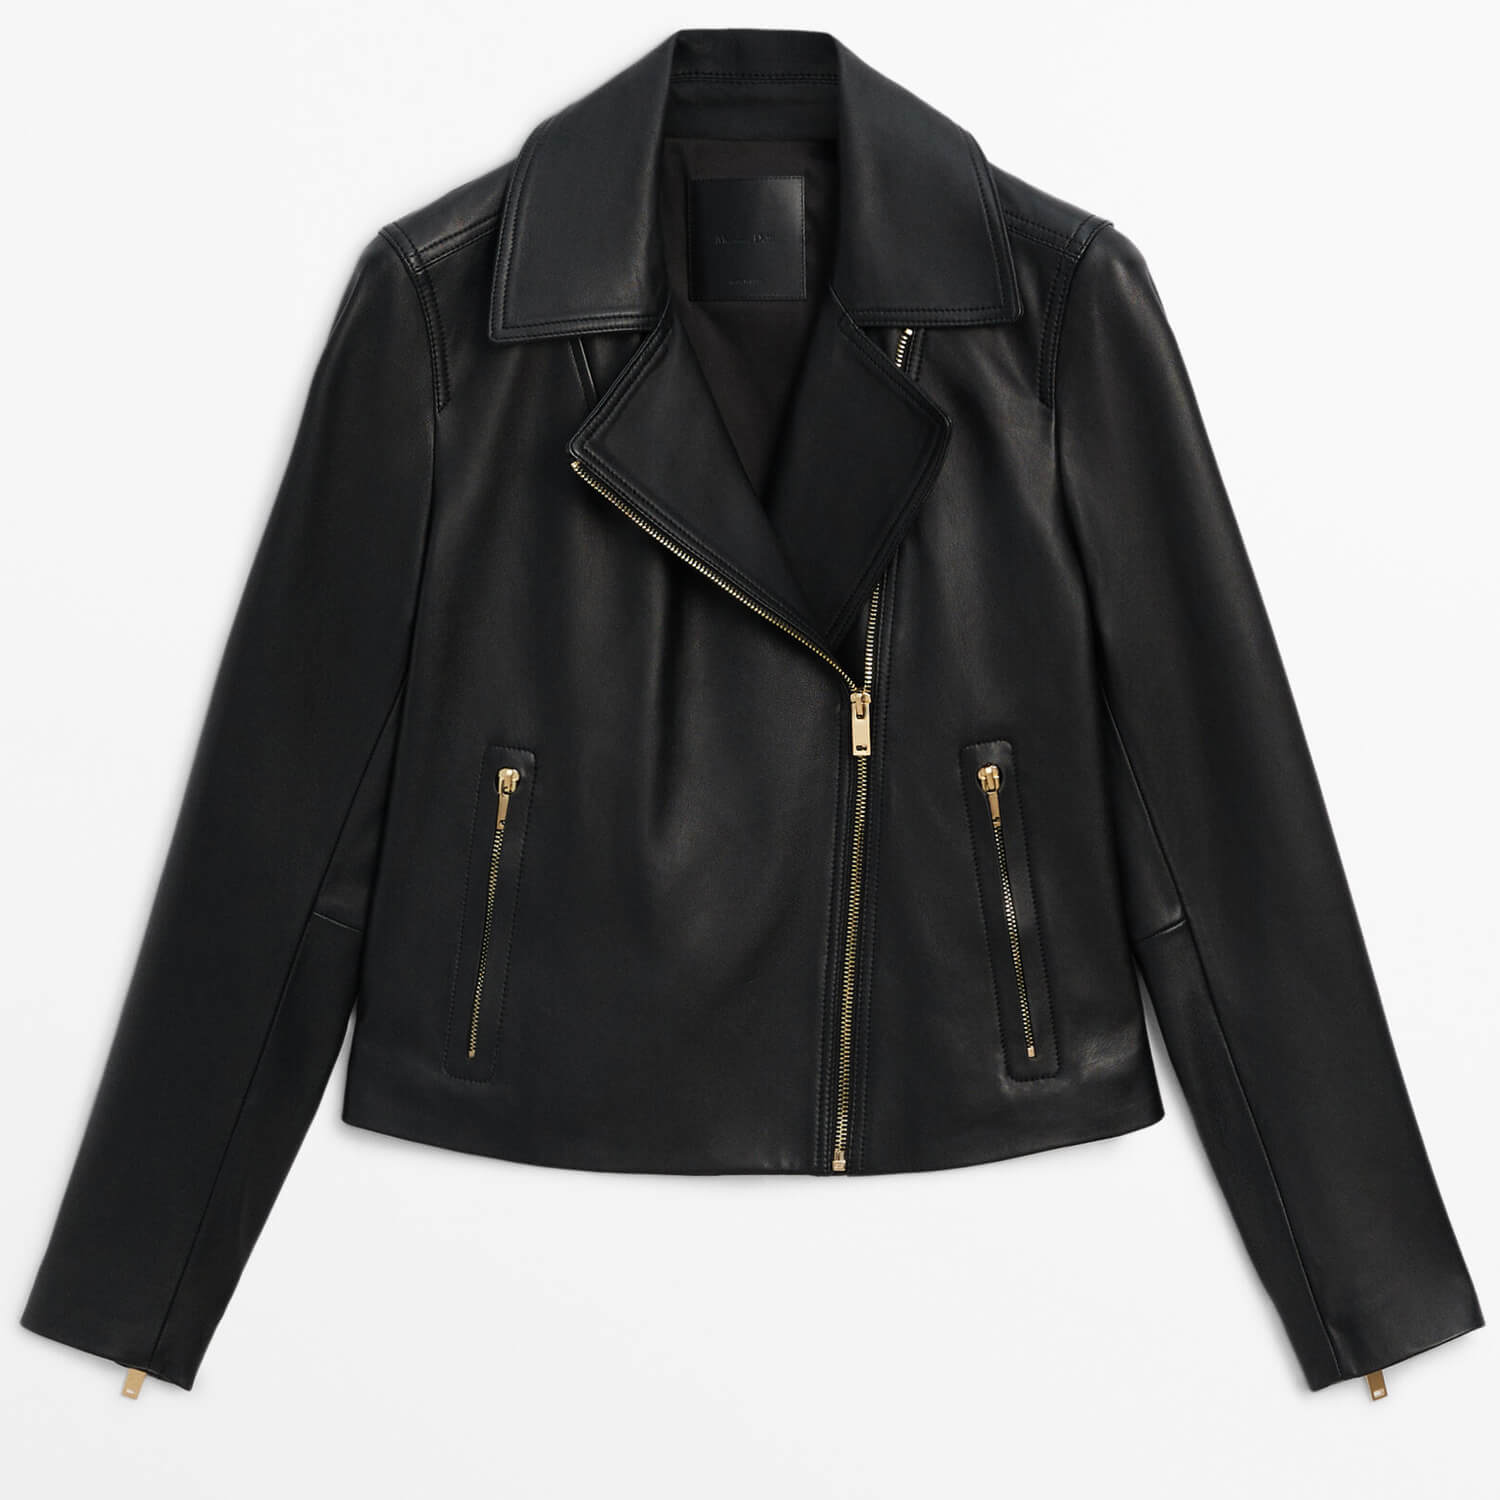 Куртка Massimo Dutti Nappa Leather Biker, черный женская байкерская стильная куртка из натуральной овечьей шкуры коричневая кожаная куртка с бахромой